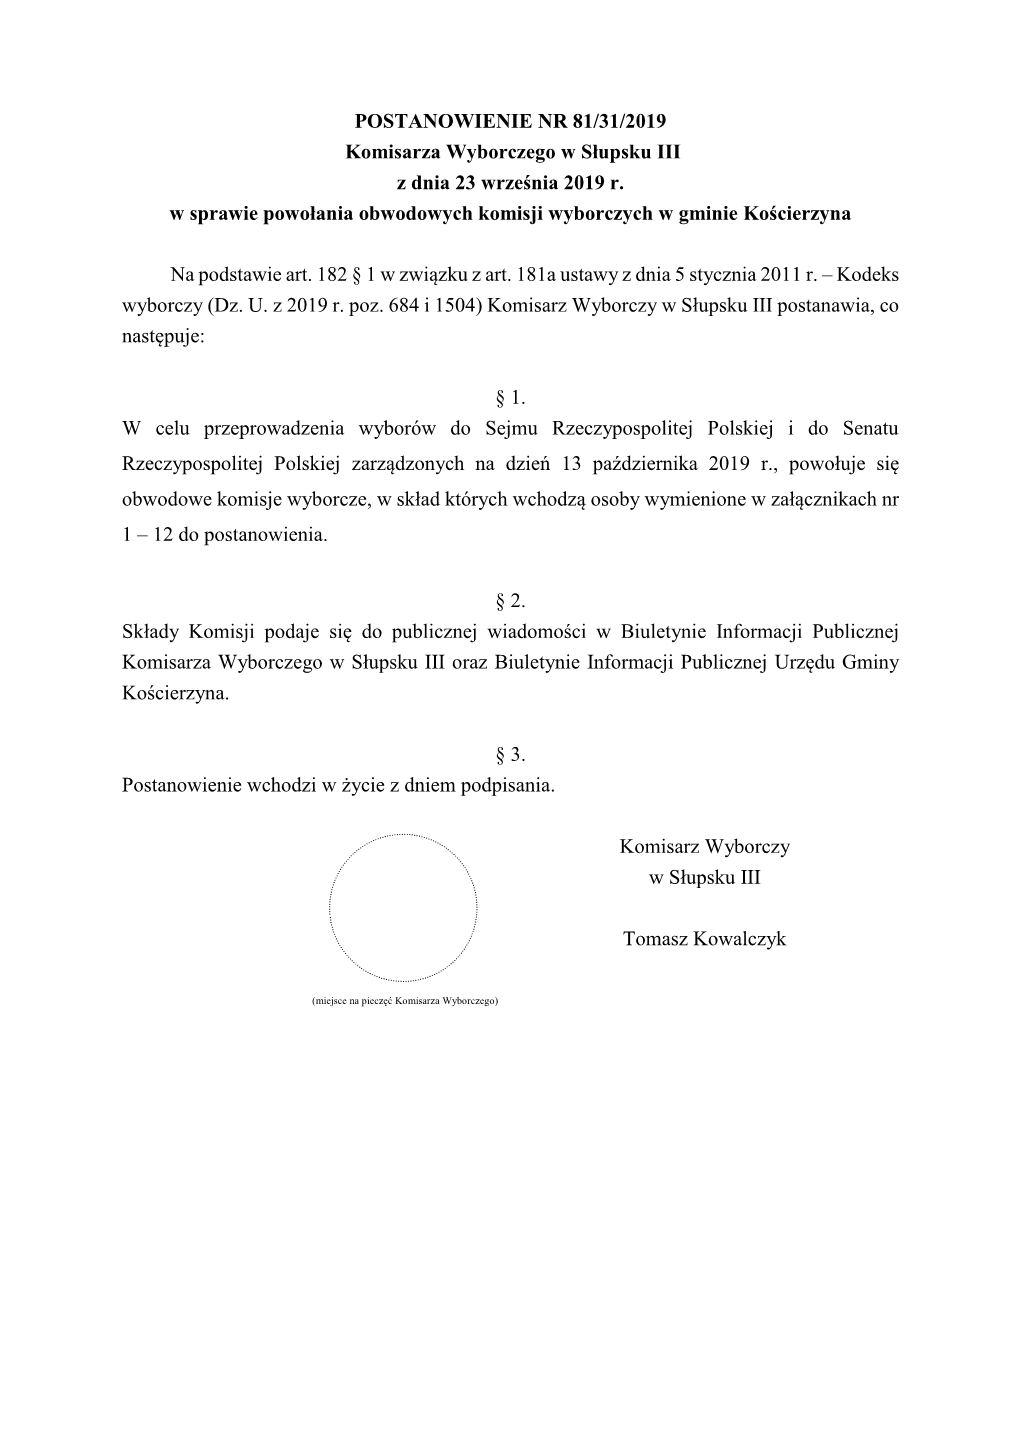 Gm. Kościerzyna Postanowienie Nr 81/31/2019 Komisarza Wyborczego W Słupsku Z Dnia 23 Września 2019